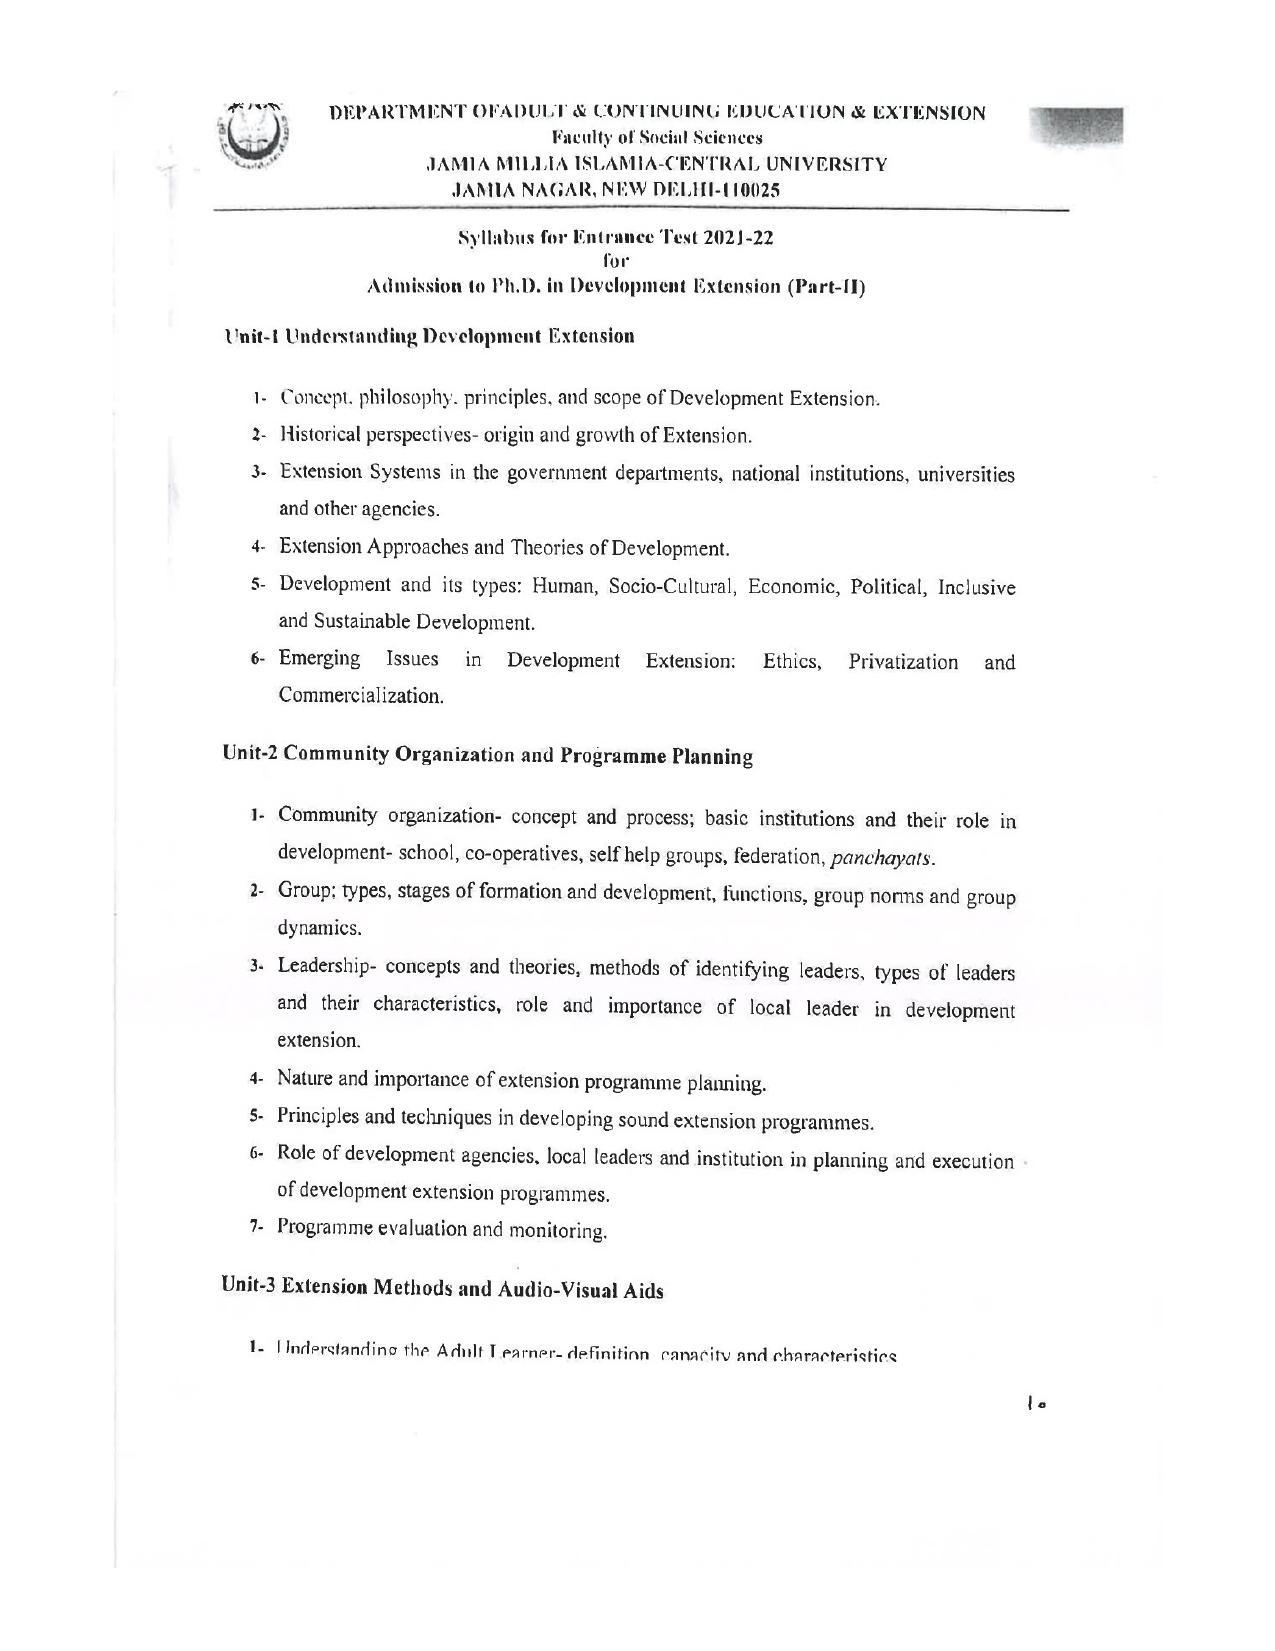 JMI Entrance Exam FACULTY OF SOCIAL SCIENCES Syllabus - Page 11